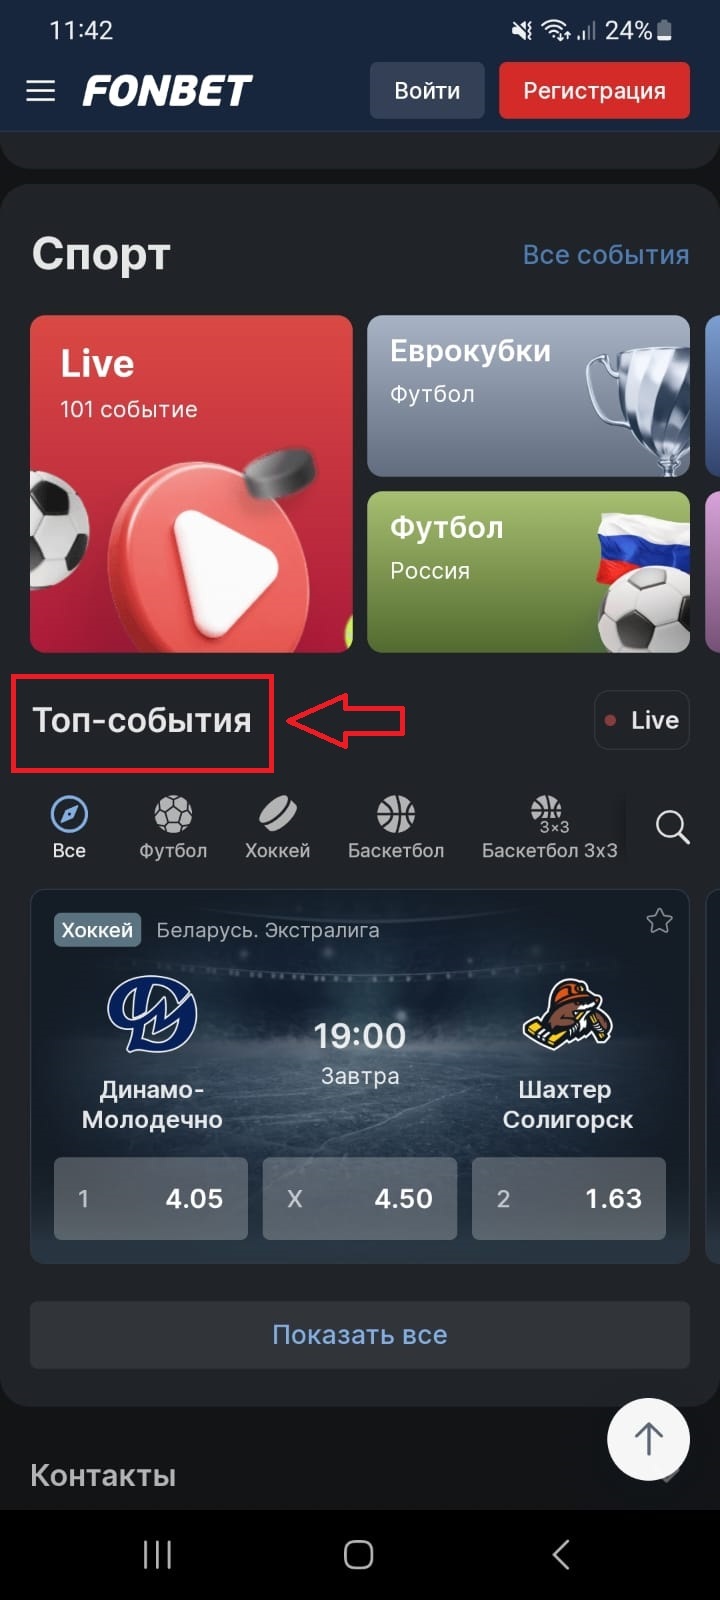 Подблок «Топ-события» в разделе «Спорт» на главном экране приложения